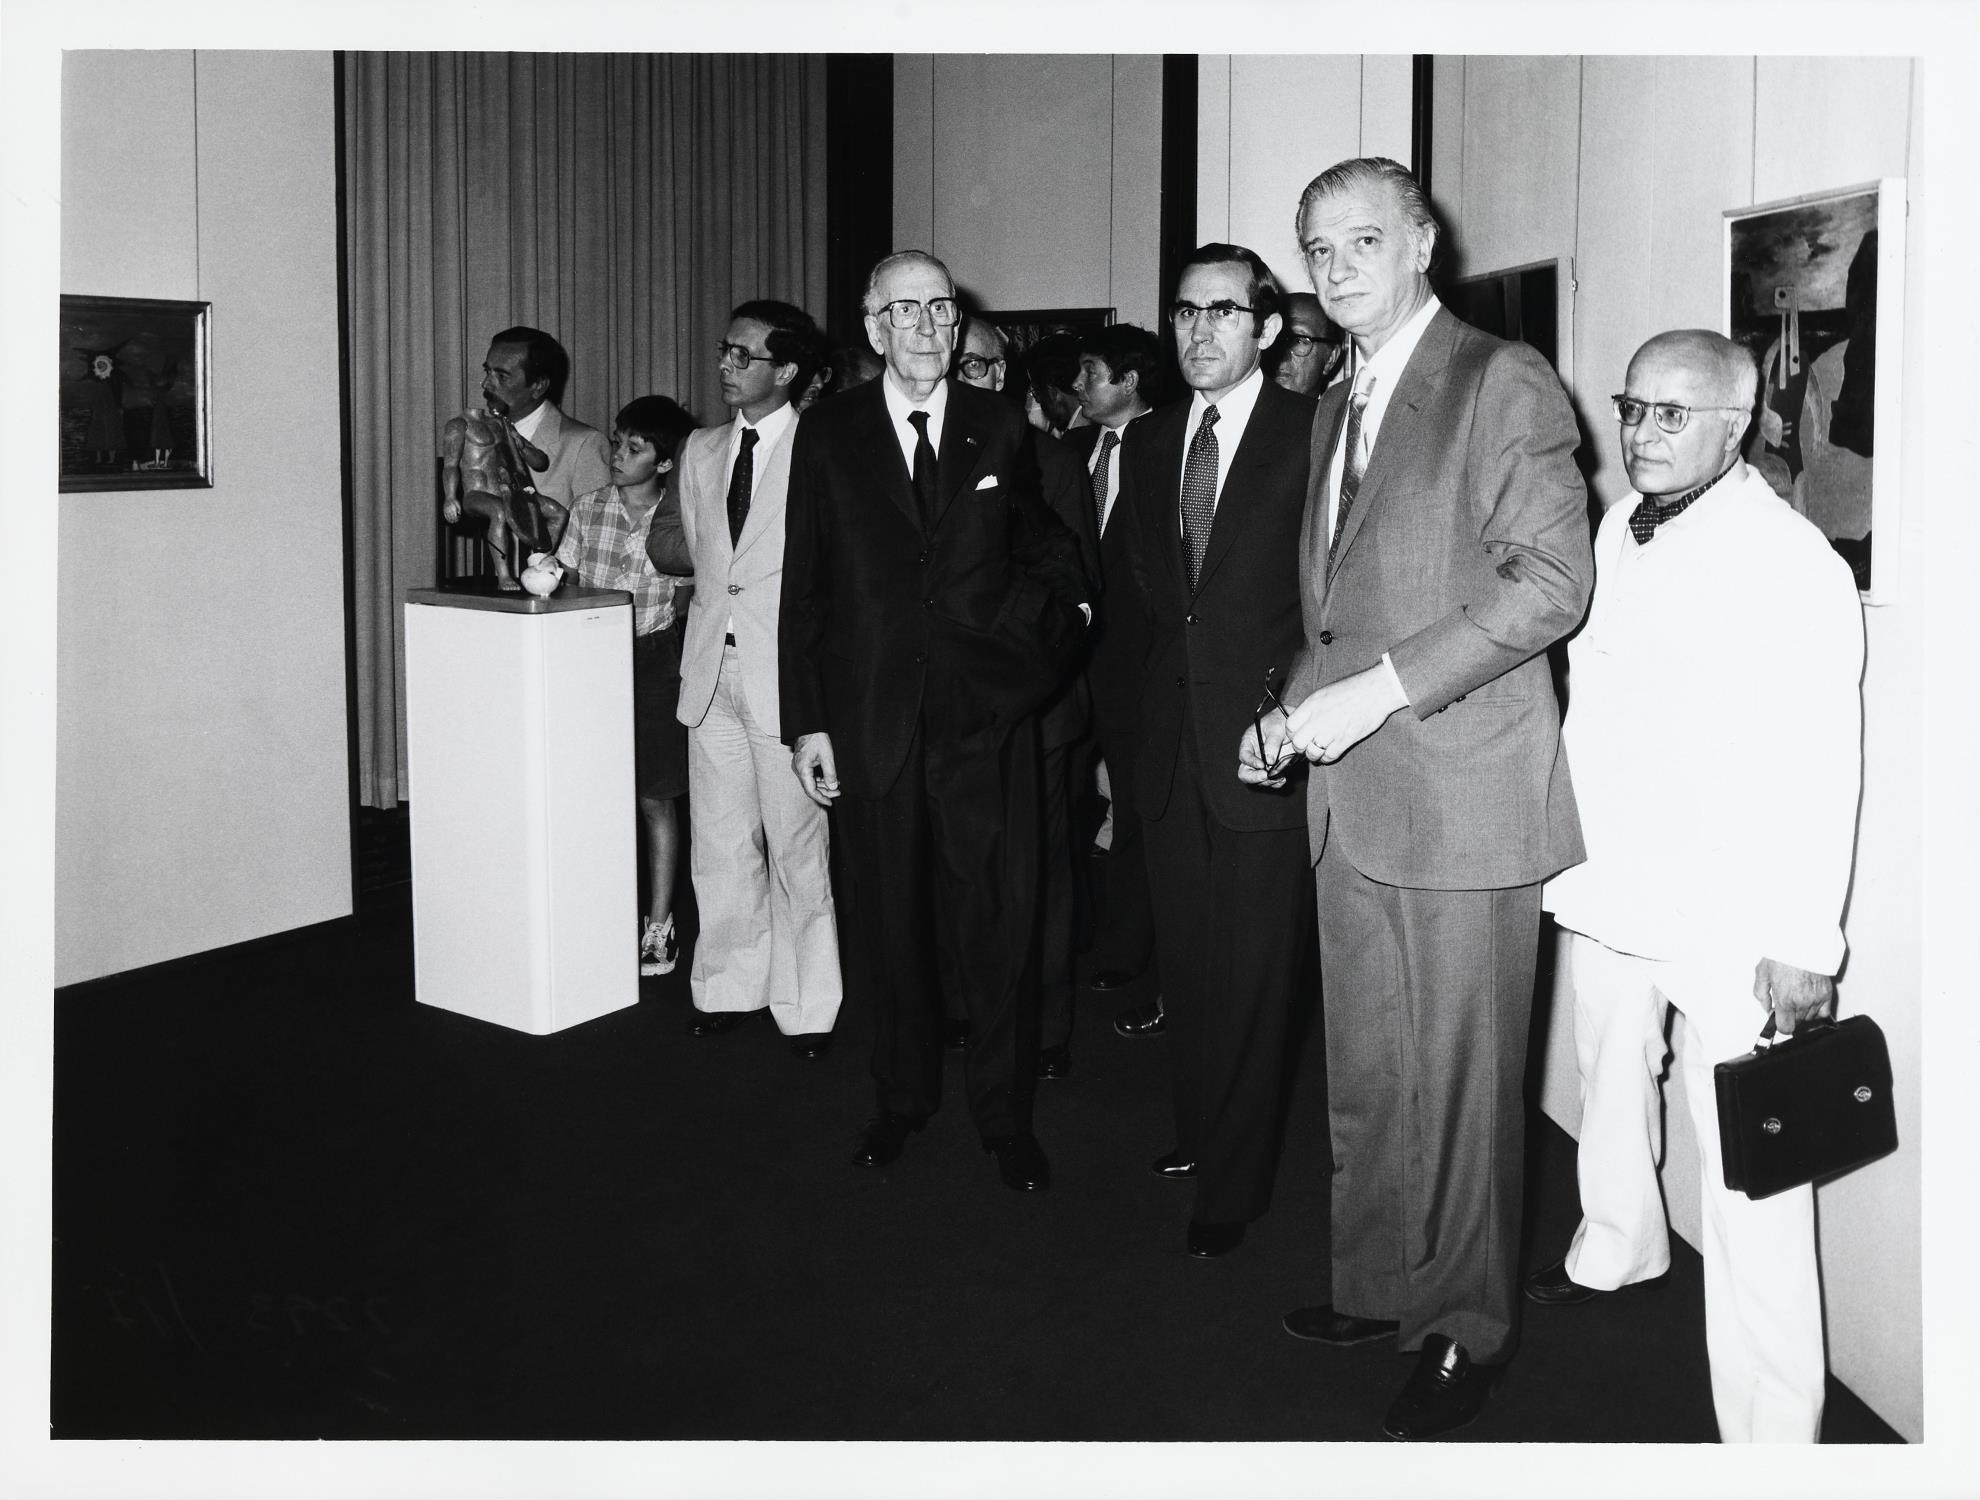 José Viana Baptista (à esq.), José de Azeredo Perdigão e António Ramalho Eanes, presidente da República Portuguesa (ao centro) e José Sommer Ribeiro (à dir.)